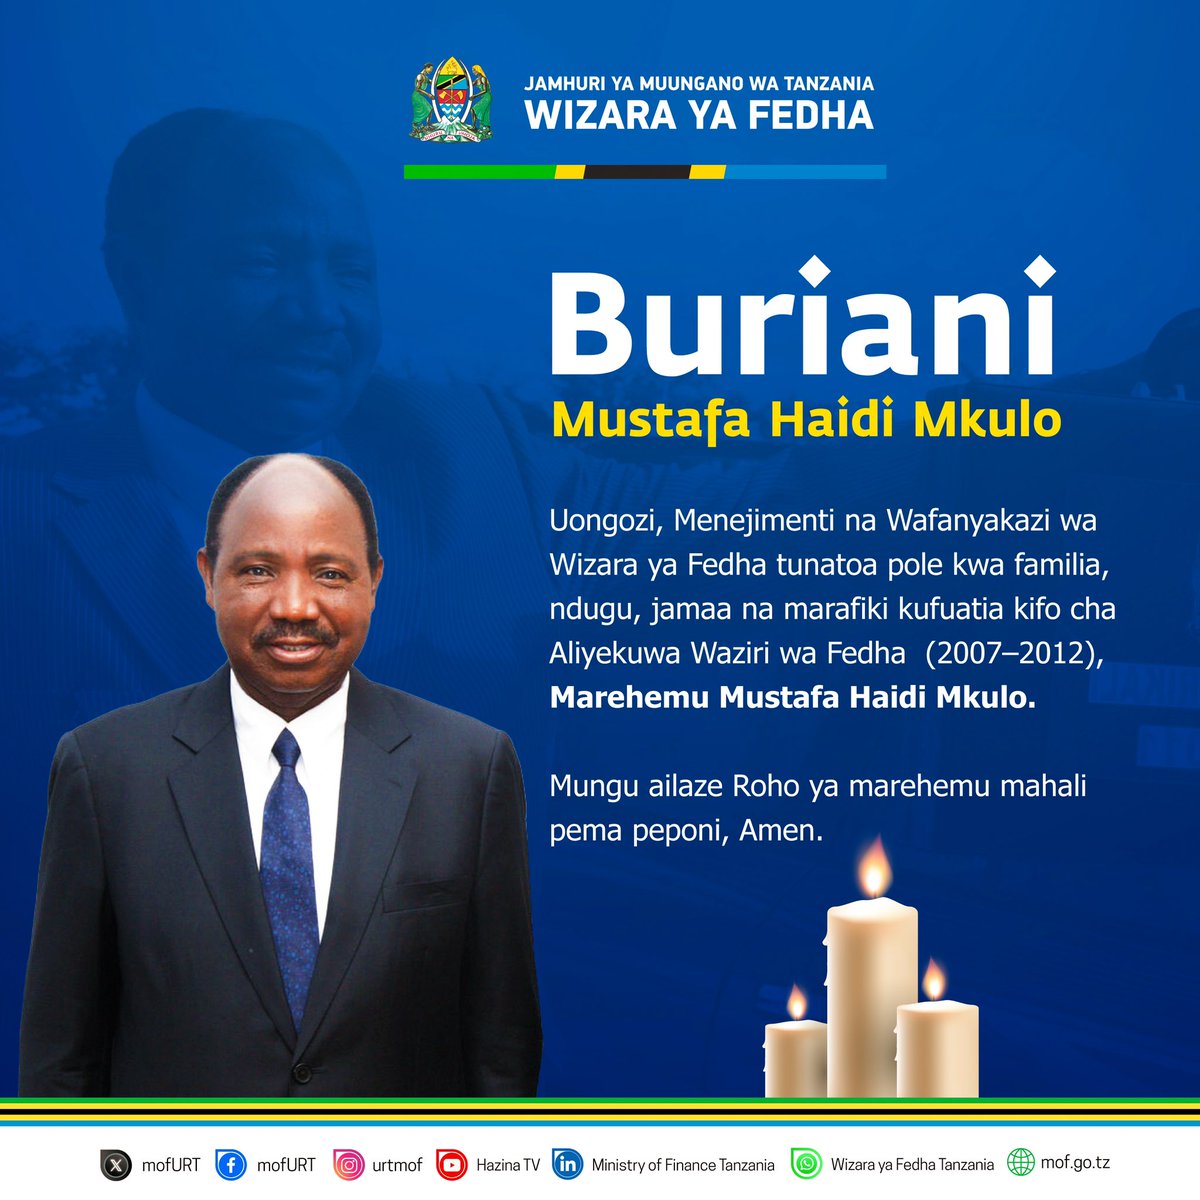 BURIANI - MUSTAFA HAIDI MKULO Aliyekuwa Waziri wa Fedha Tanzania (2007-2012) Mungu ailaze Roho ya marehemu, mahali pema peponi, Amen.